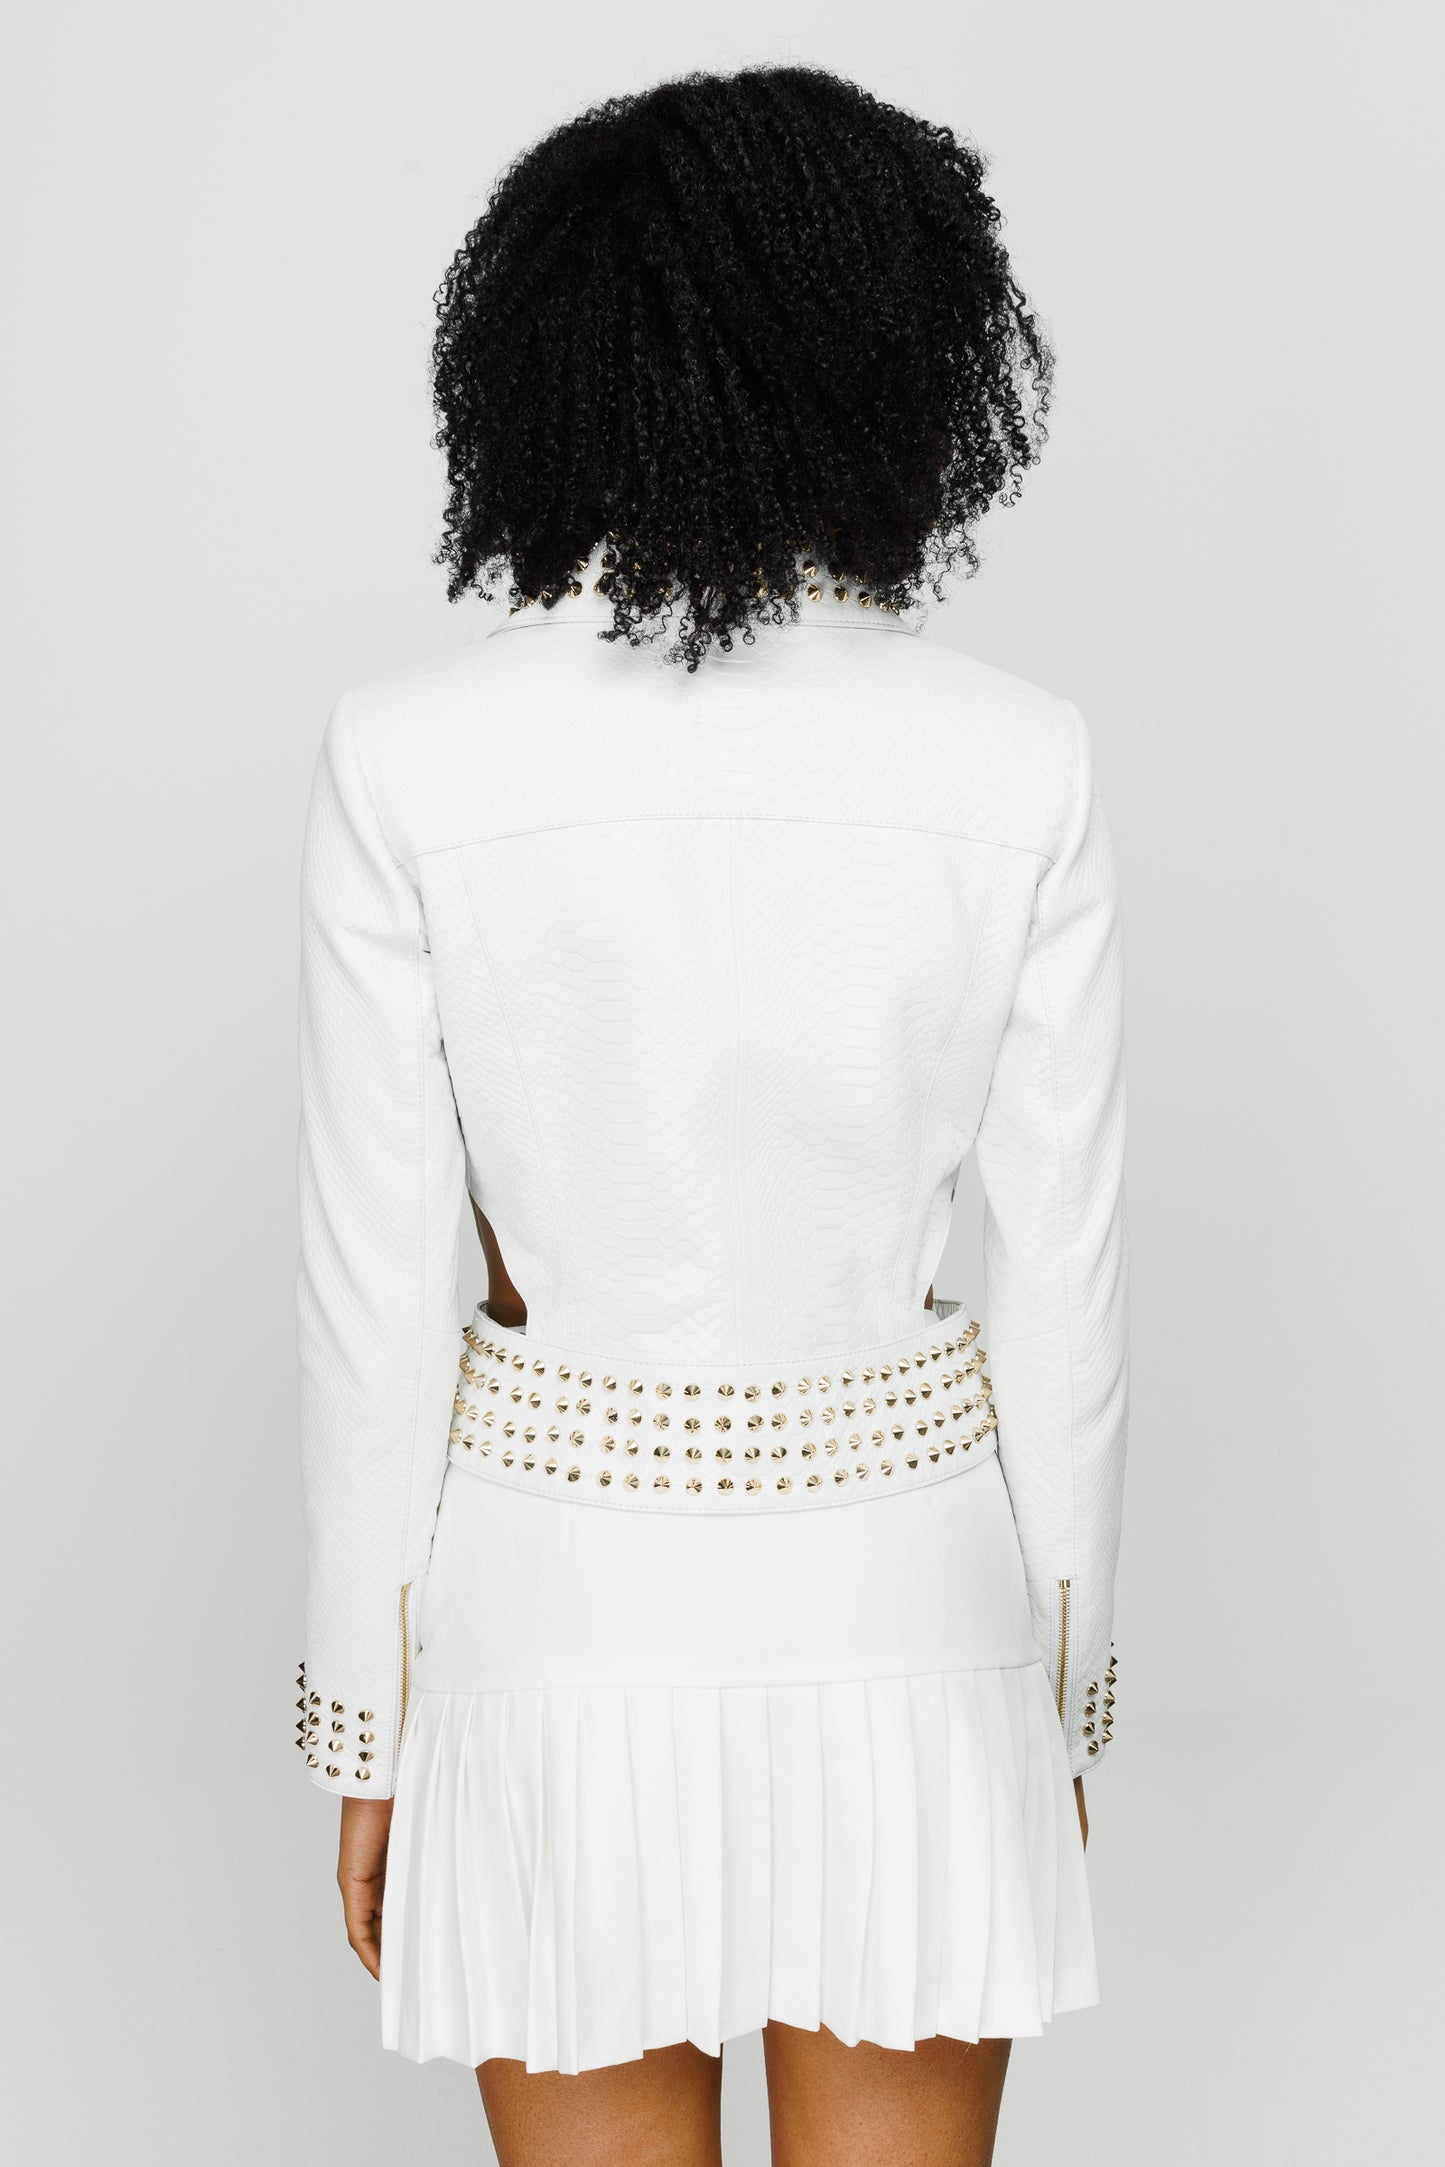 The Infanta White Leather Jacket